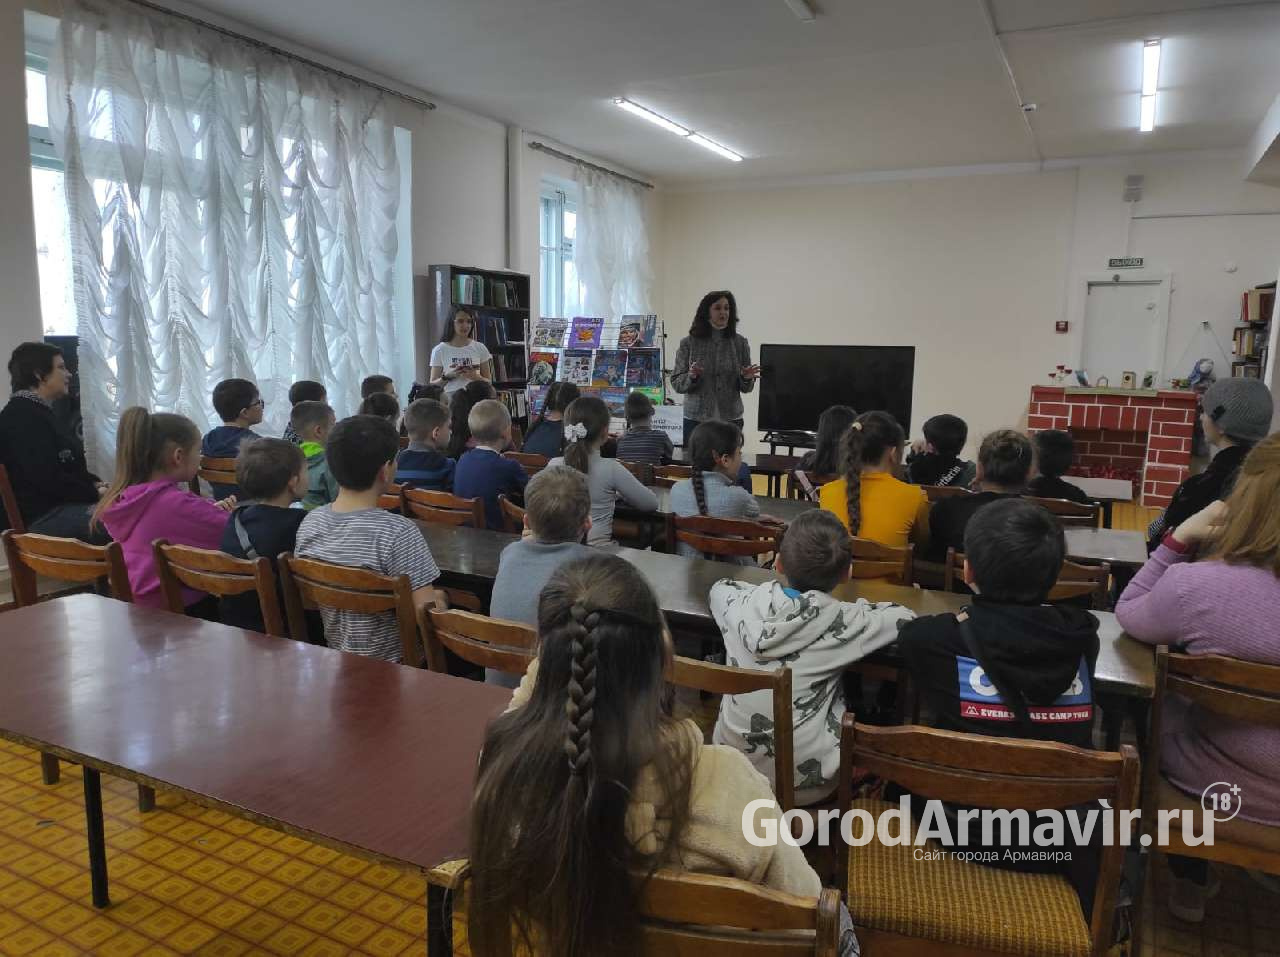 В Армавире благодаря гранту почти 600 детей стали участниками проекта "ТехникУм"